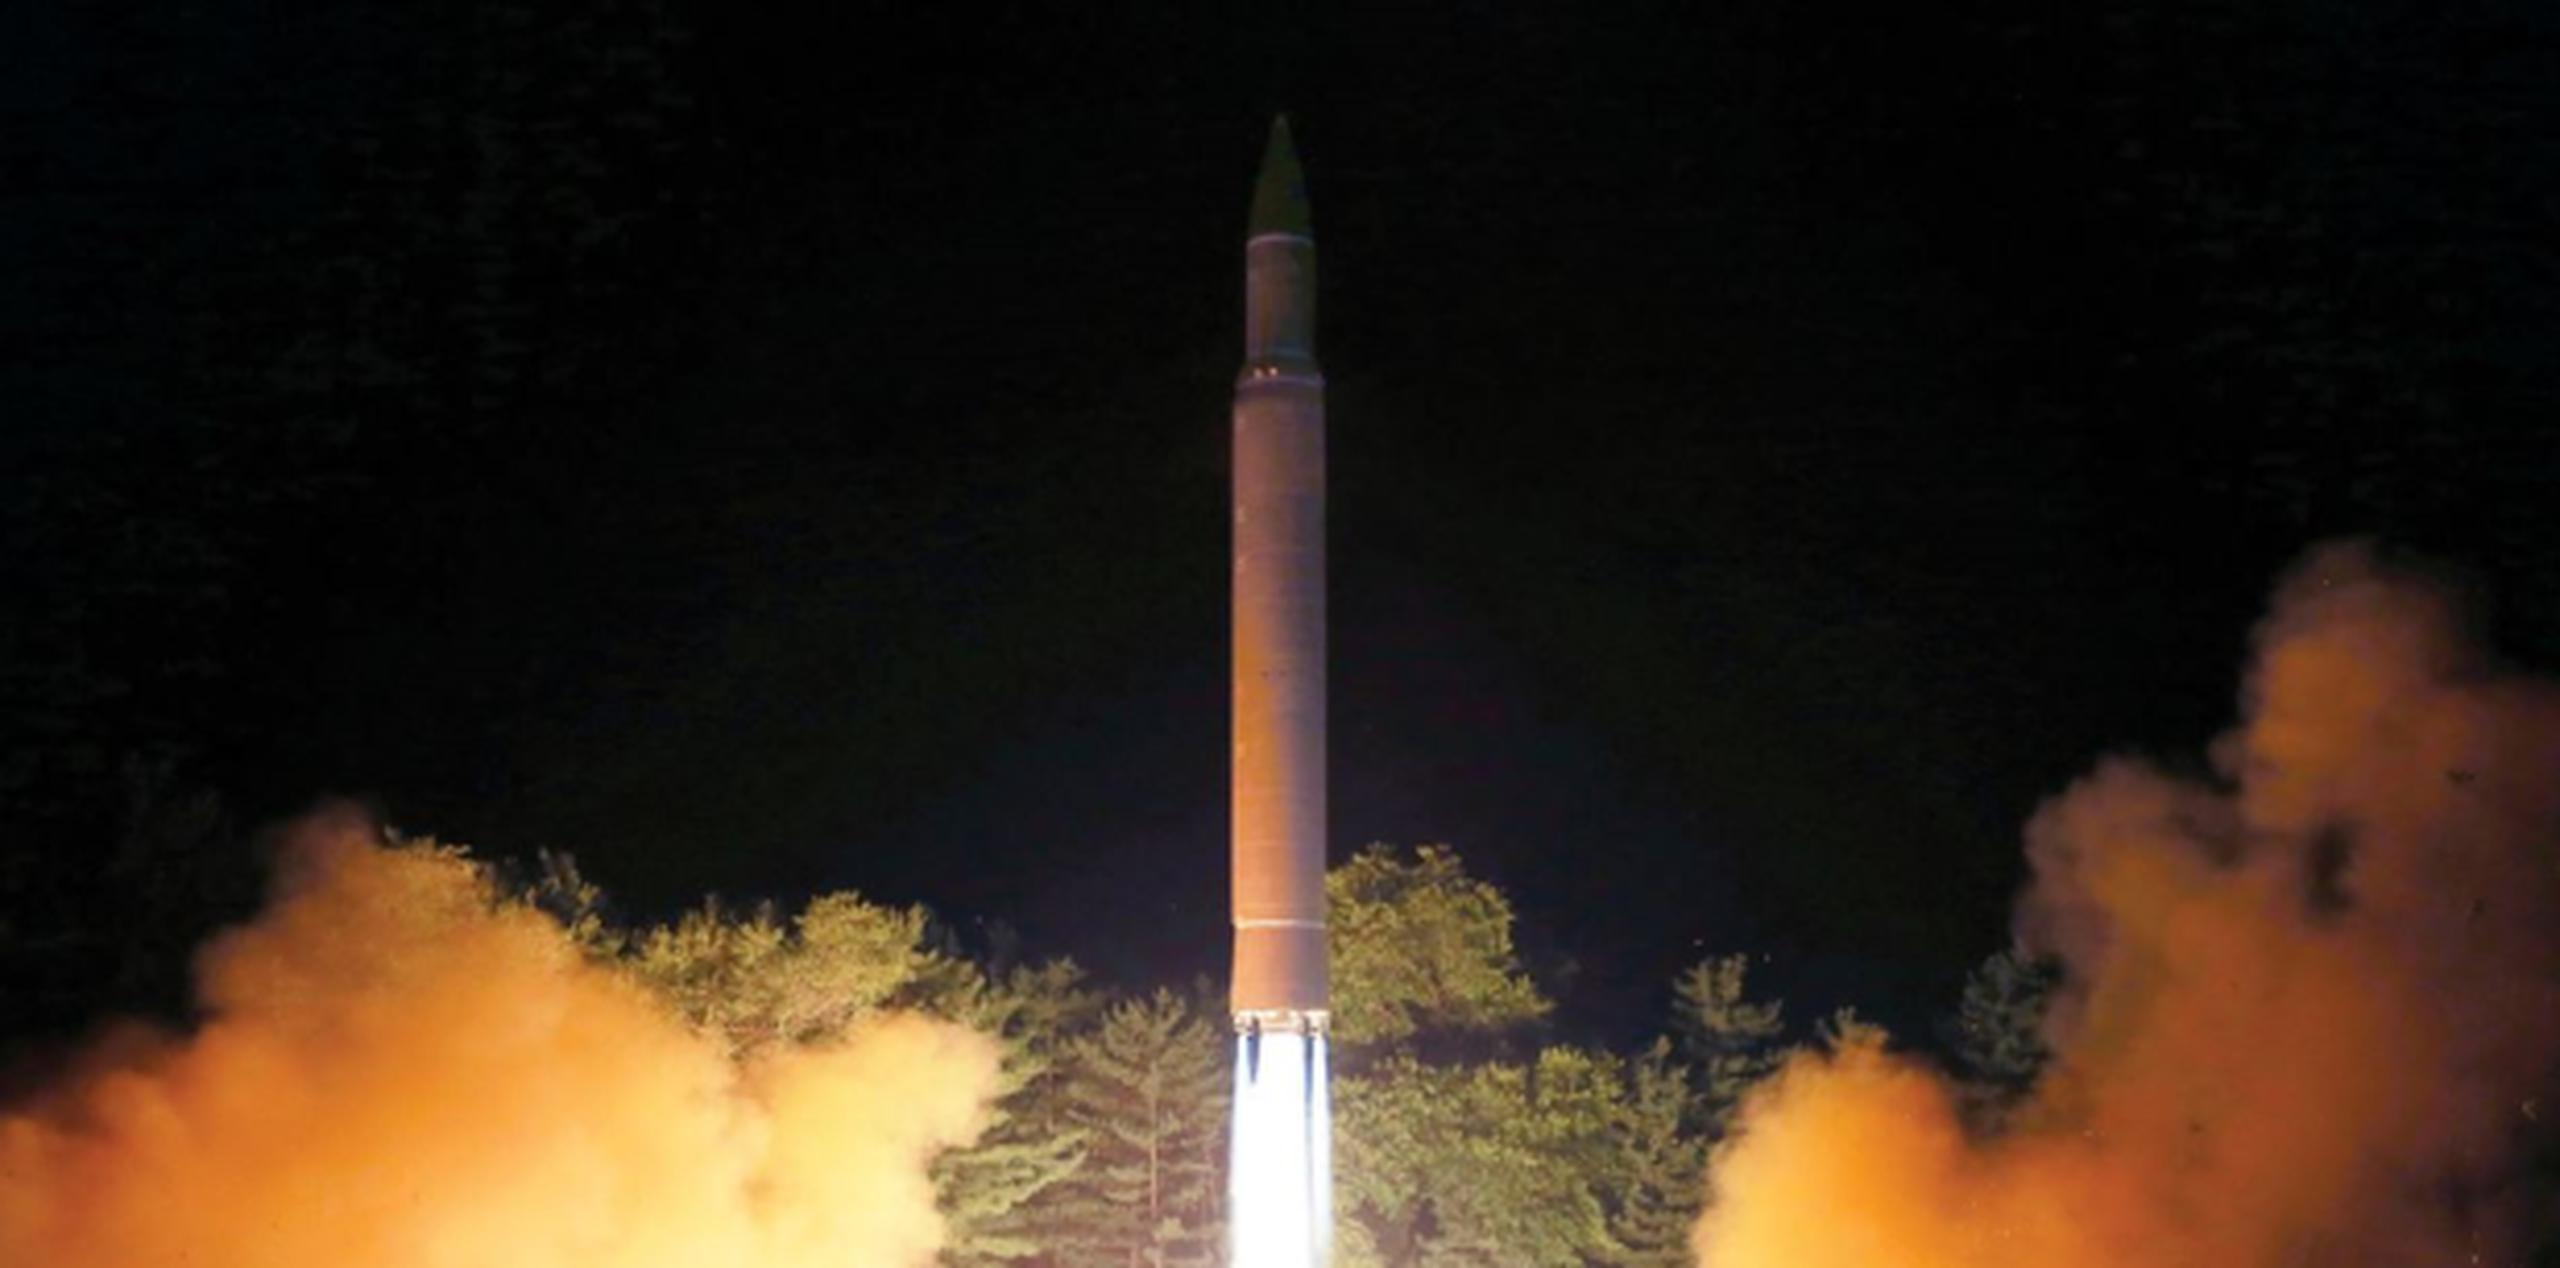 En un comunicado publicado por la prensa estatal, el gobierno norcoreano dijo que las sanciones son una “violenta infracción a su soberanía” provocada por “el atroz plan de Estados Unidos por aislar” a Corea del Norte. (AP)